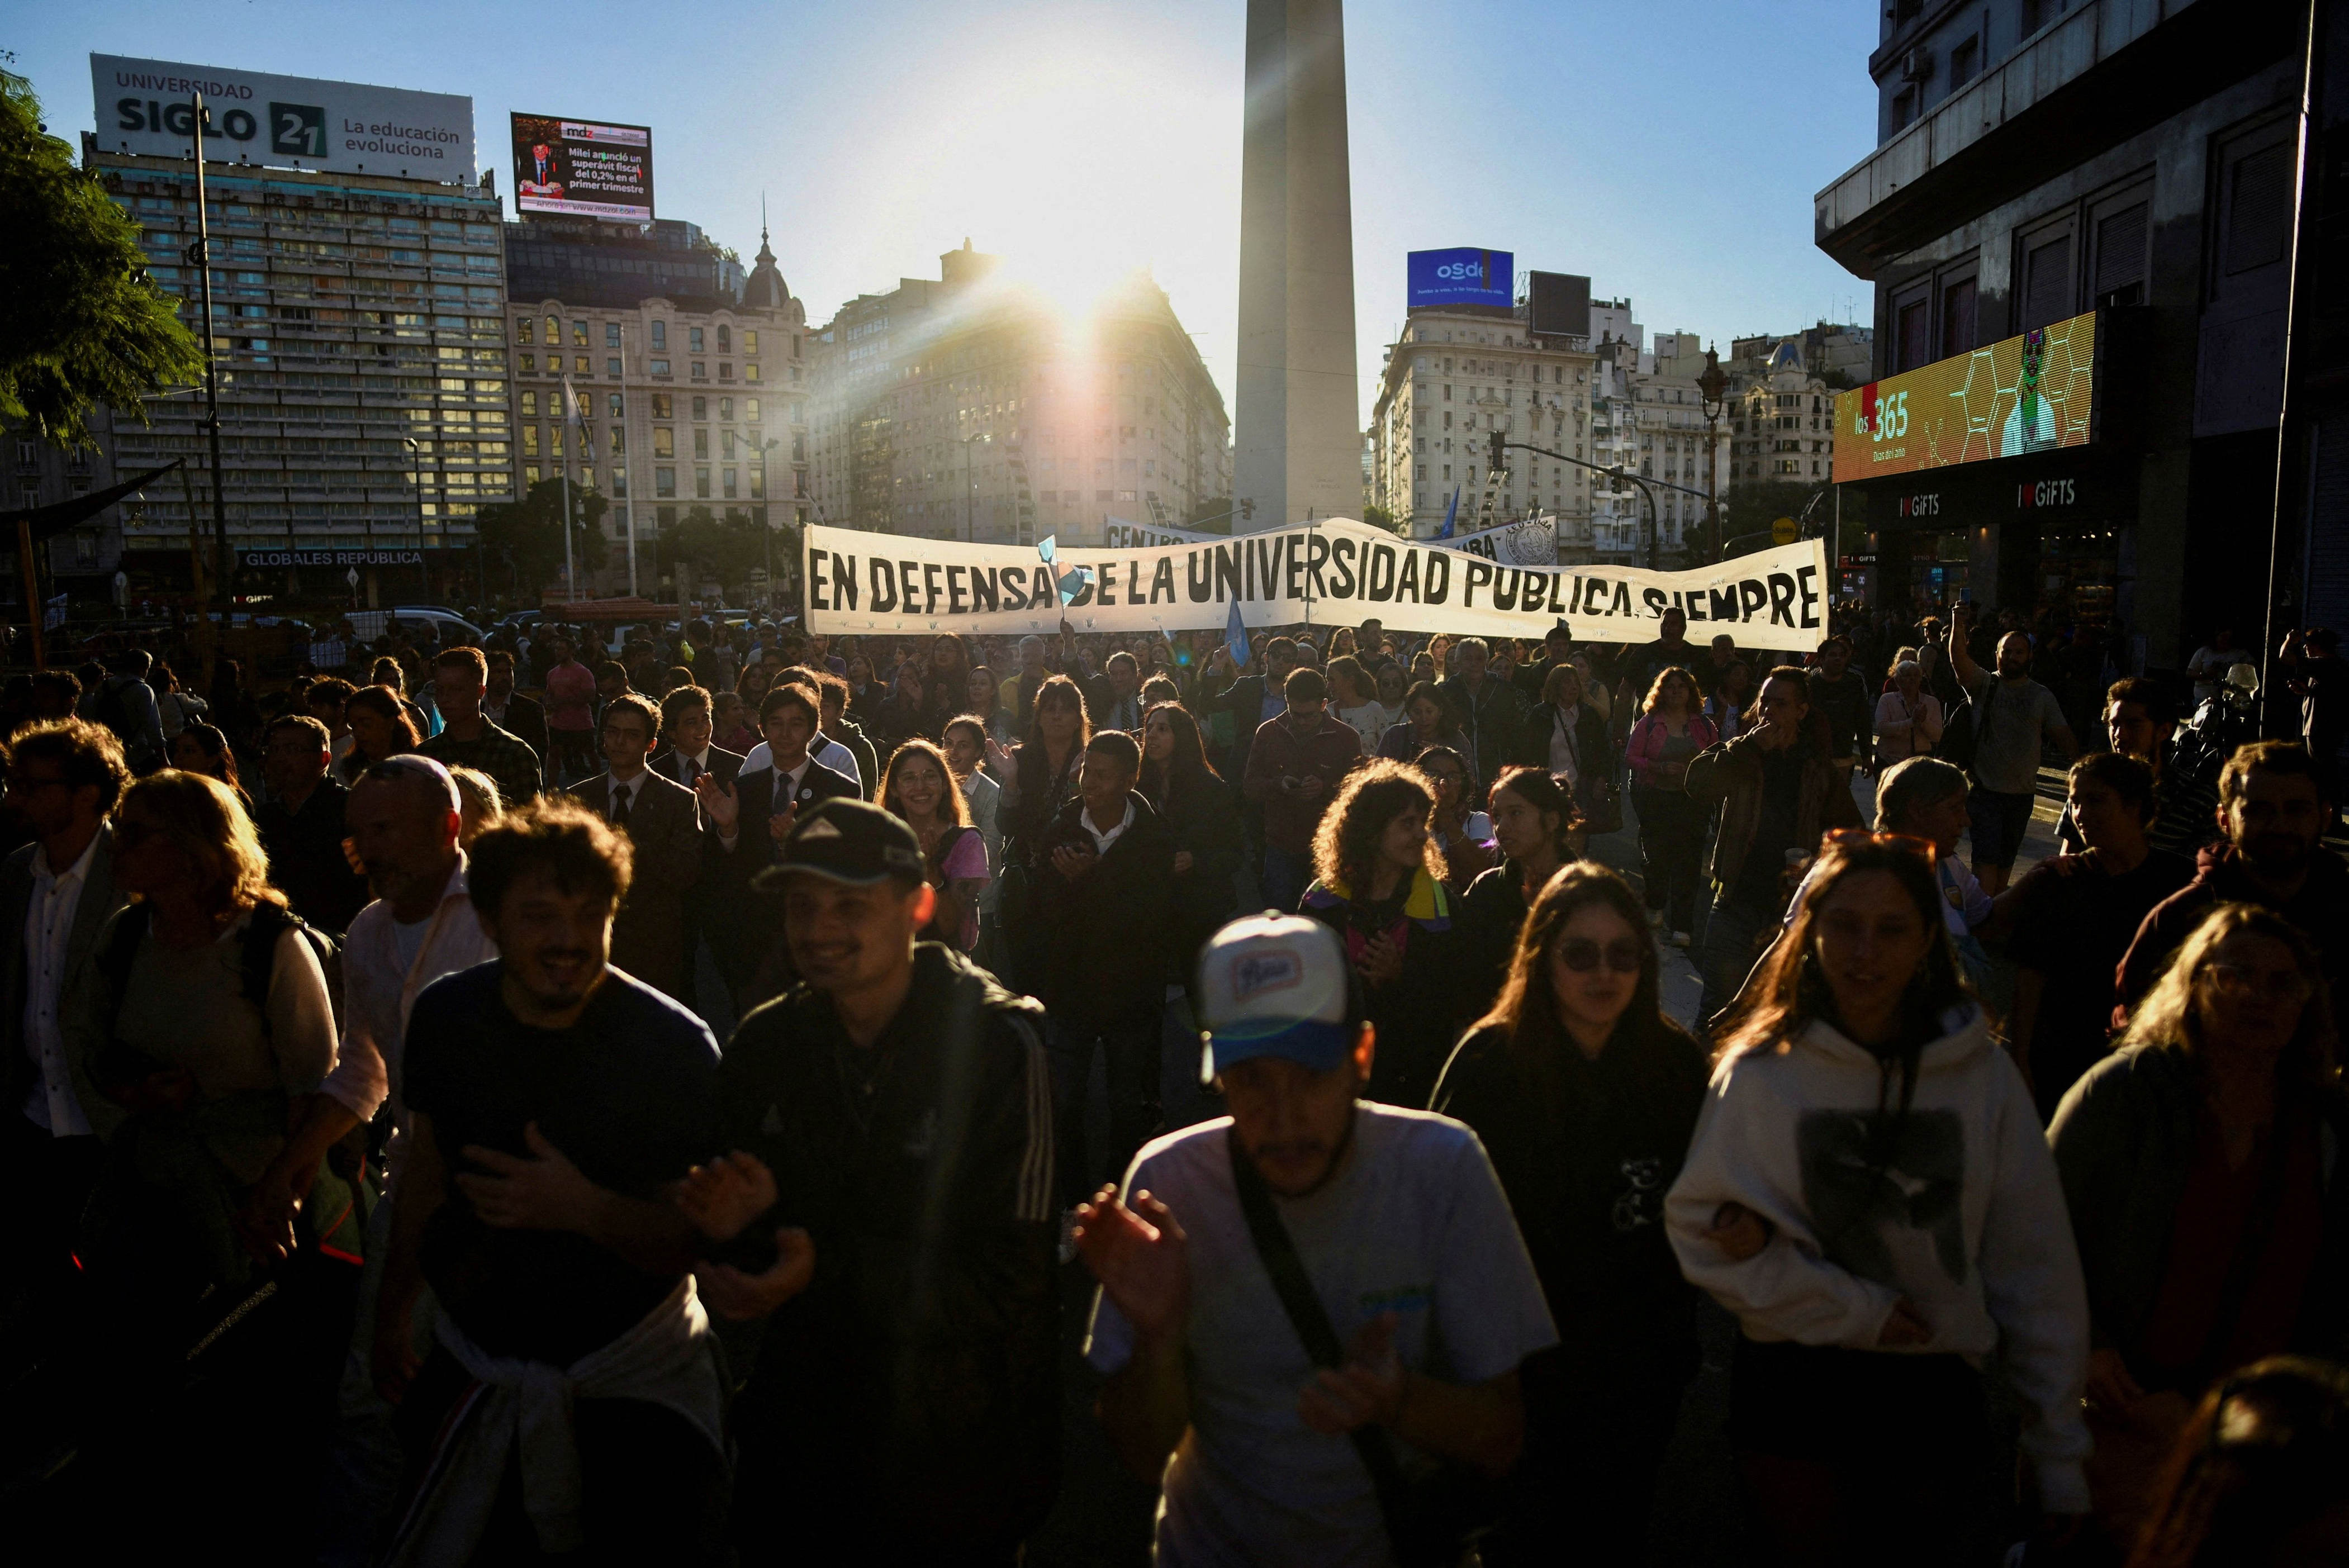 hunderttausende argentinier protestieren gegen sparkurs bei bildung